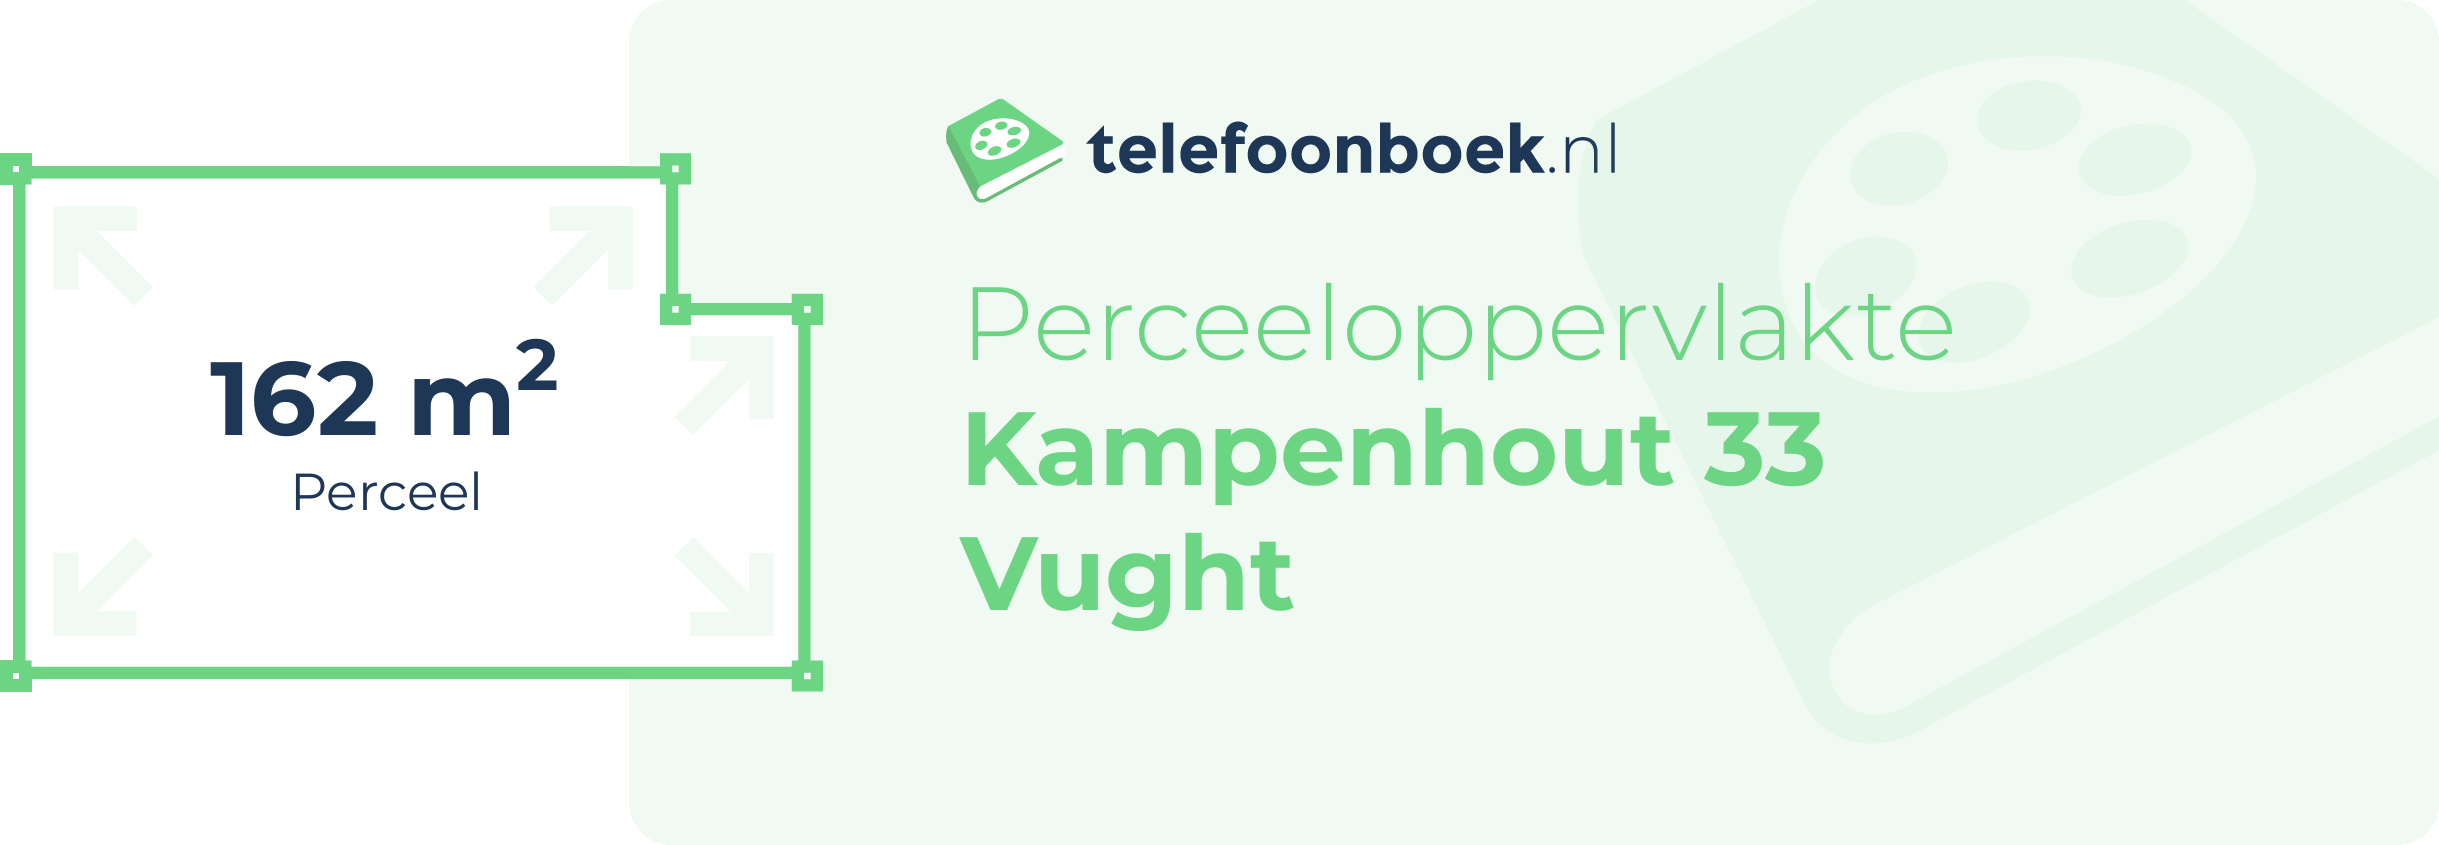 Perceeloppervlakte Kampenhout 33 Vught